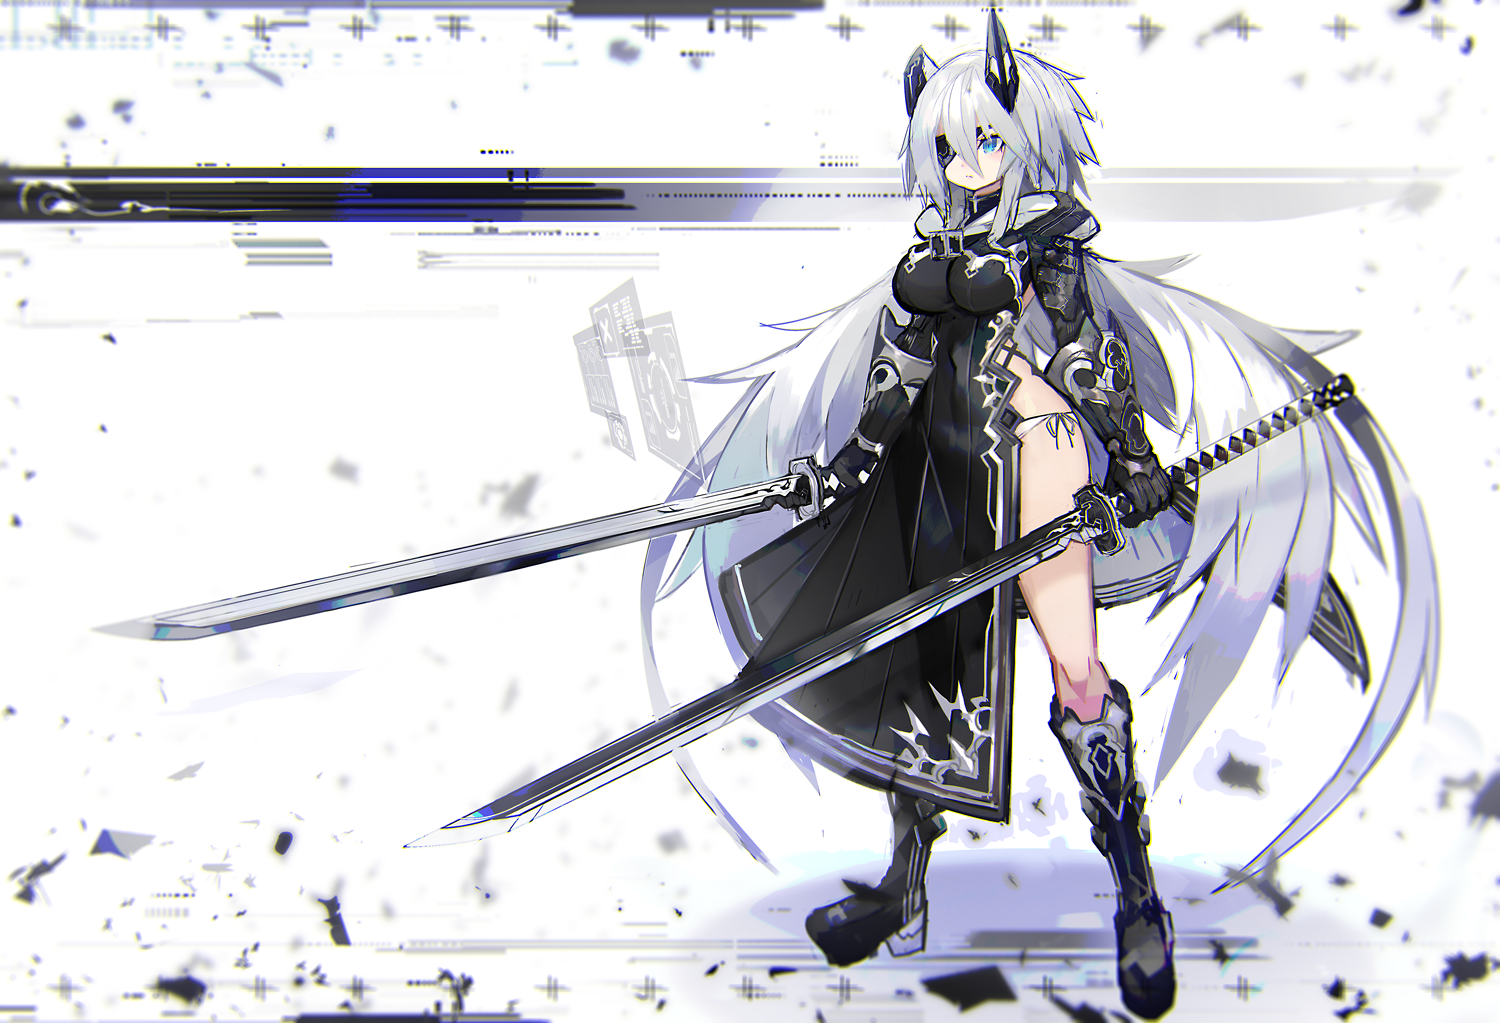 sword girls anime